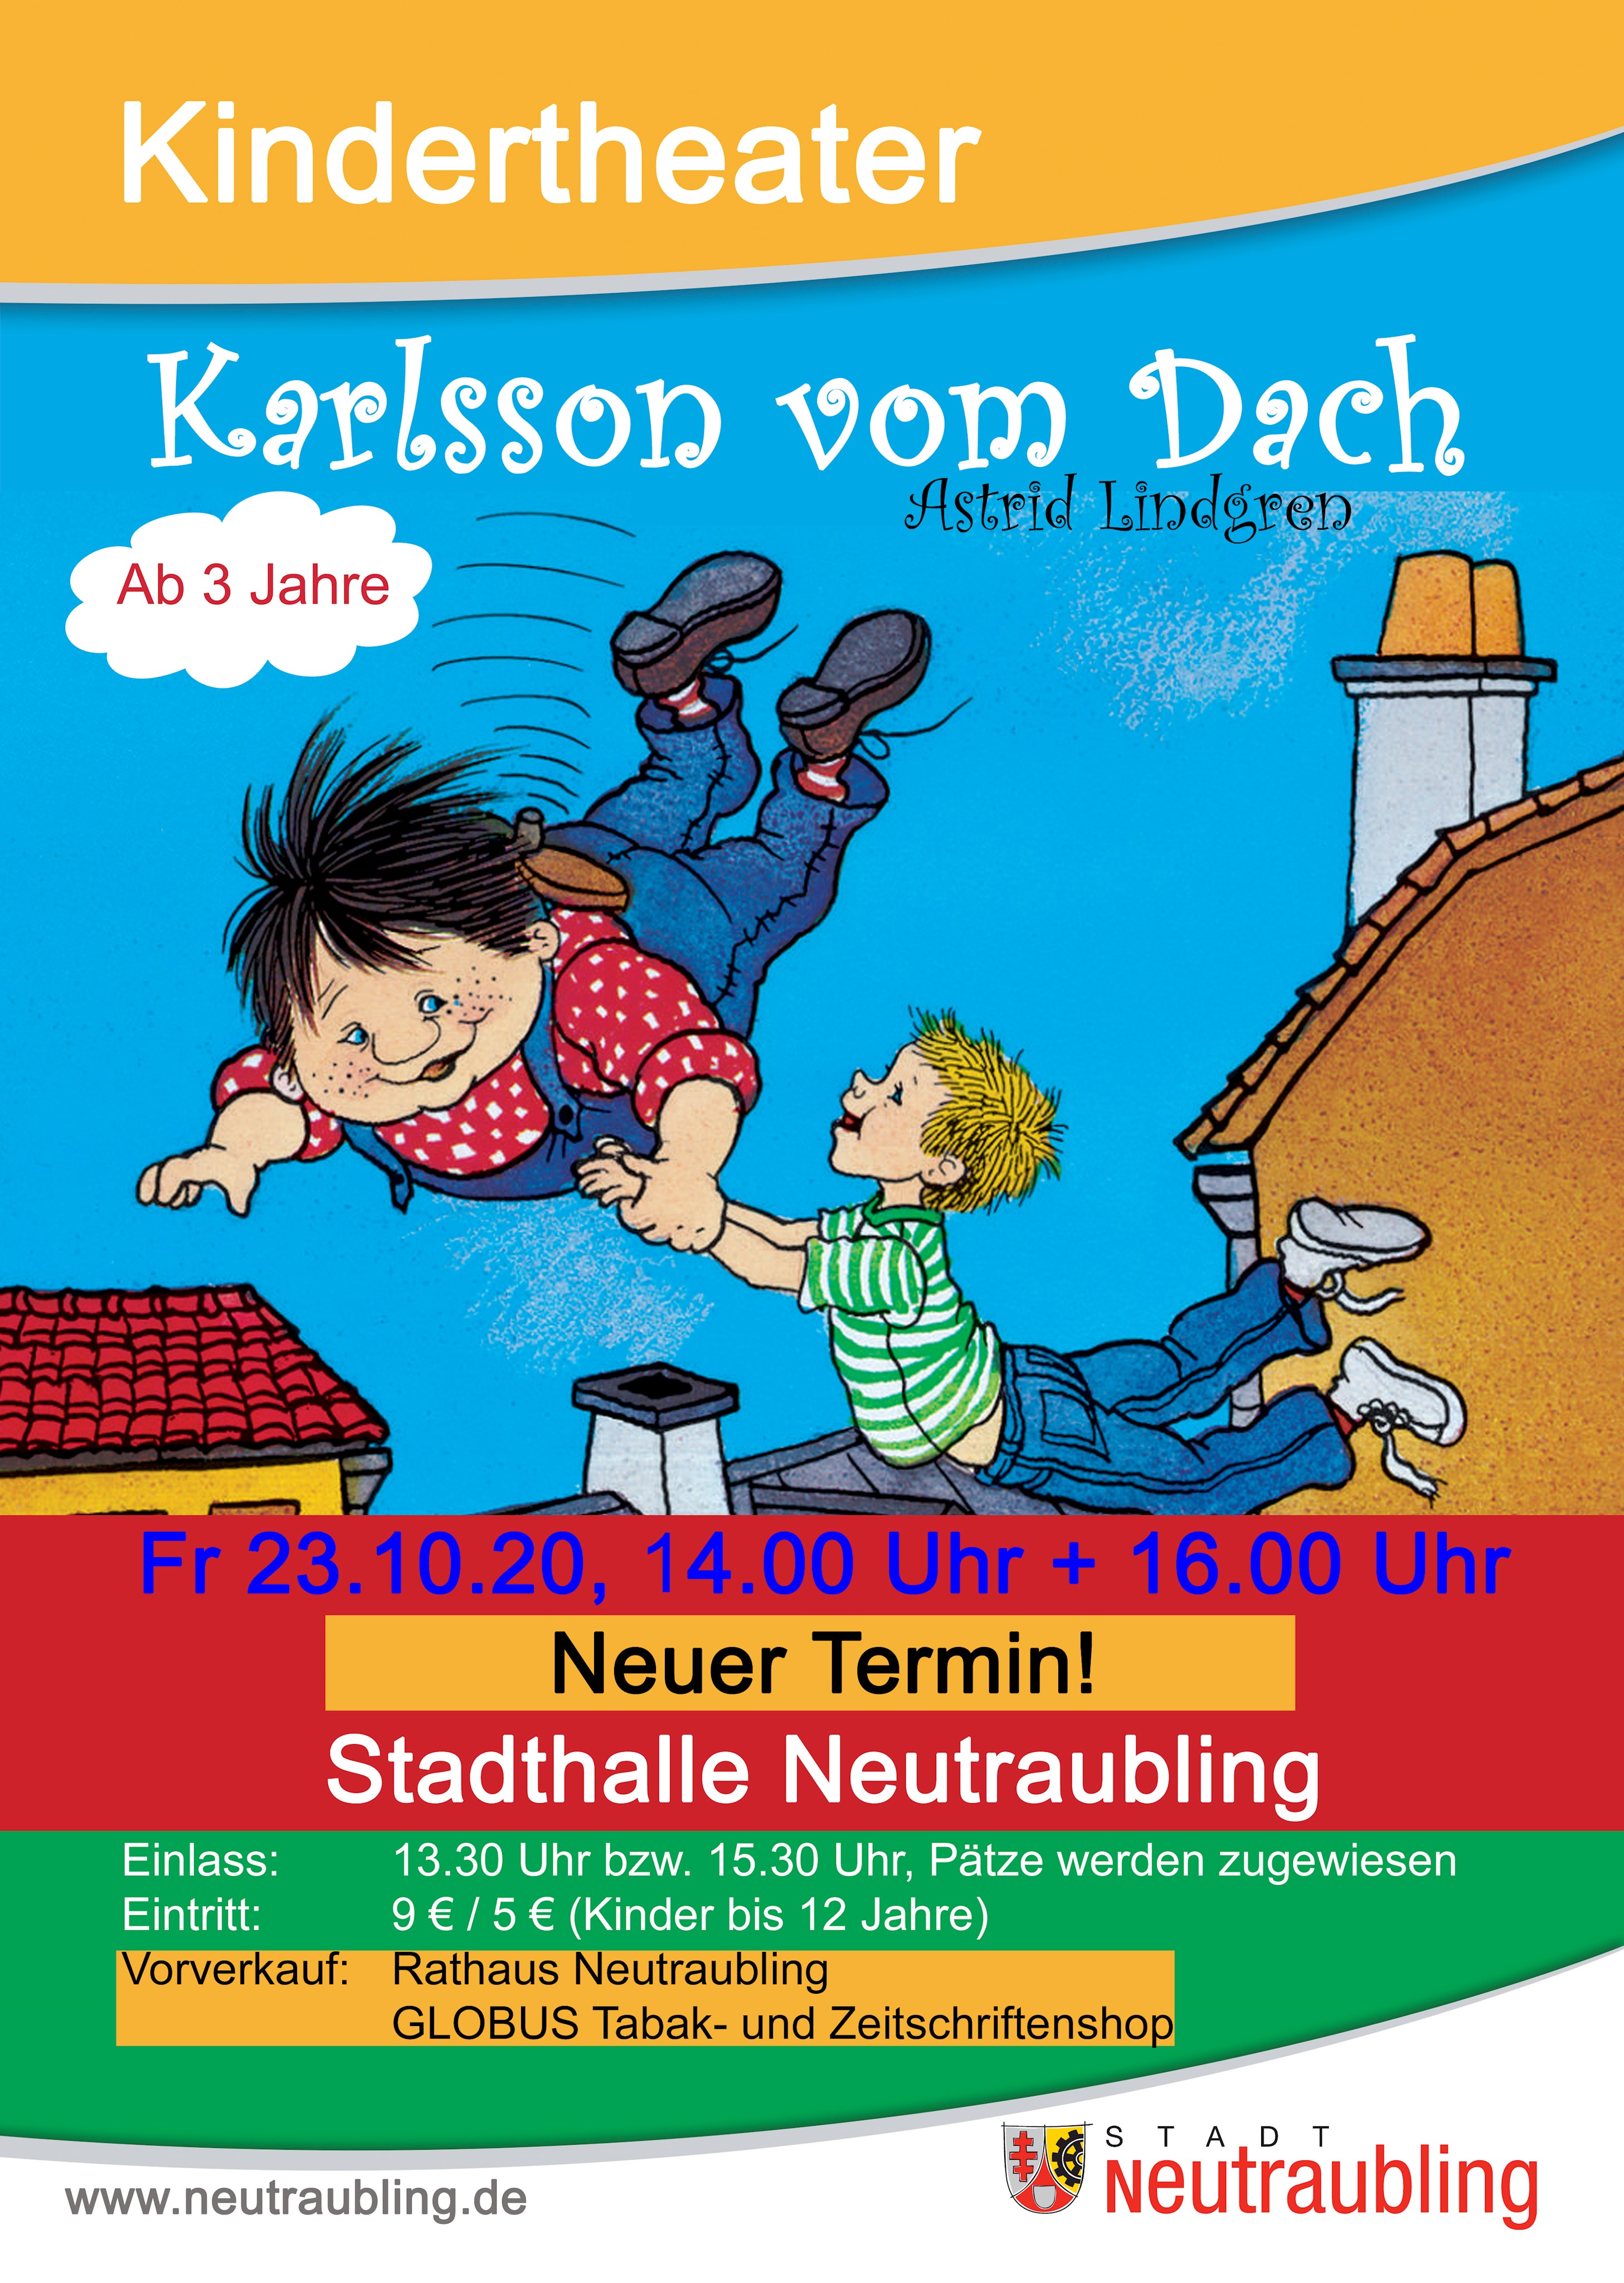 ERSATZTERMIN: Kindertheater Karlsson vom Dach